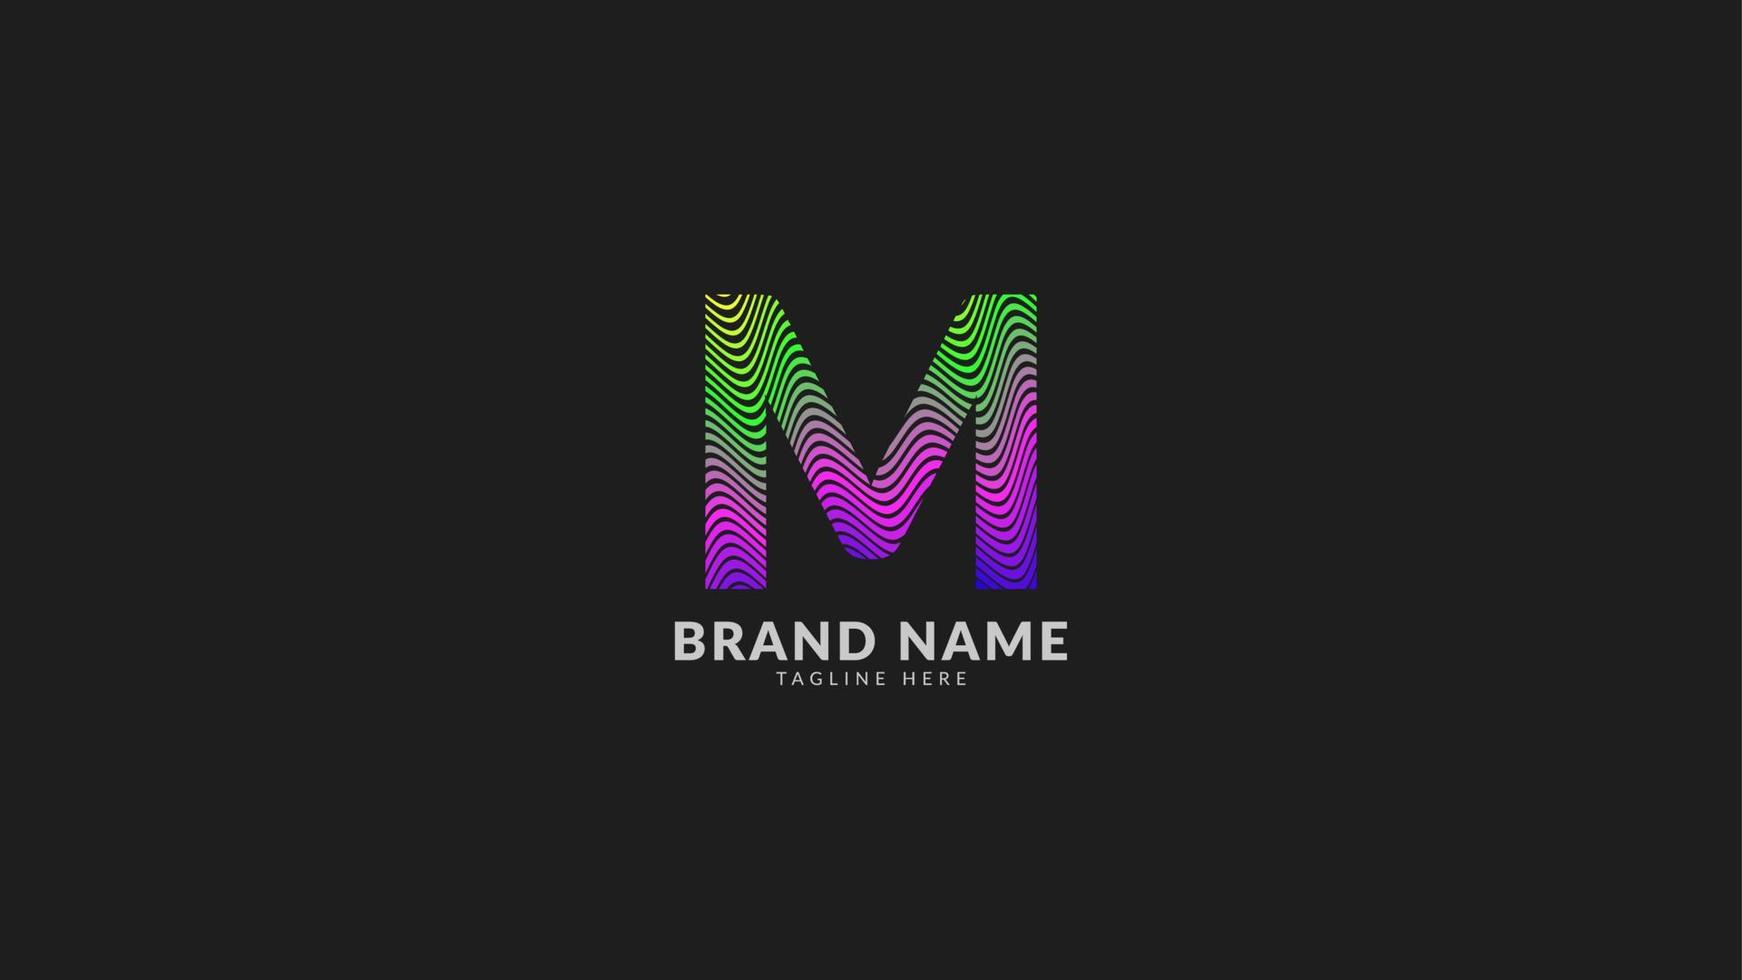 logotipo colorido abstracto del arco iris ondulado de la letra m para una marca de empresa creativa e innovadora. elemento de diseño de vector de impresión o web